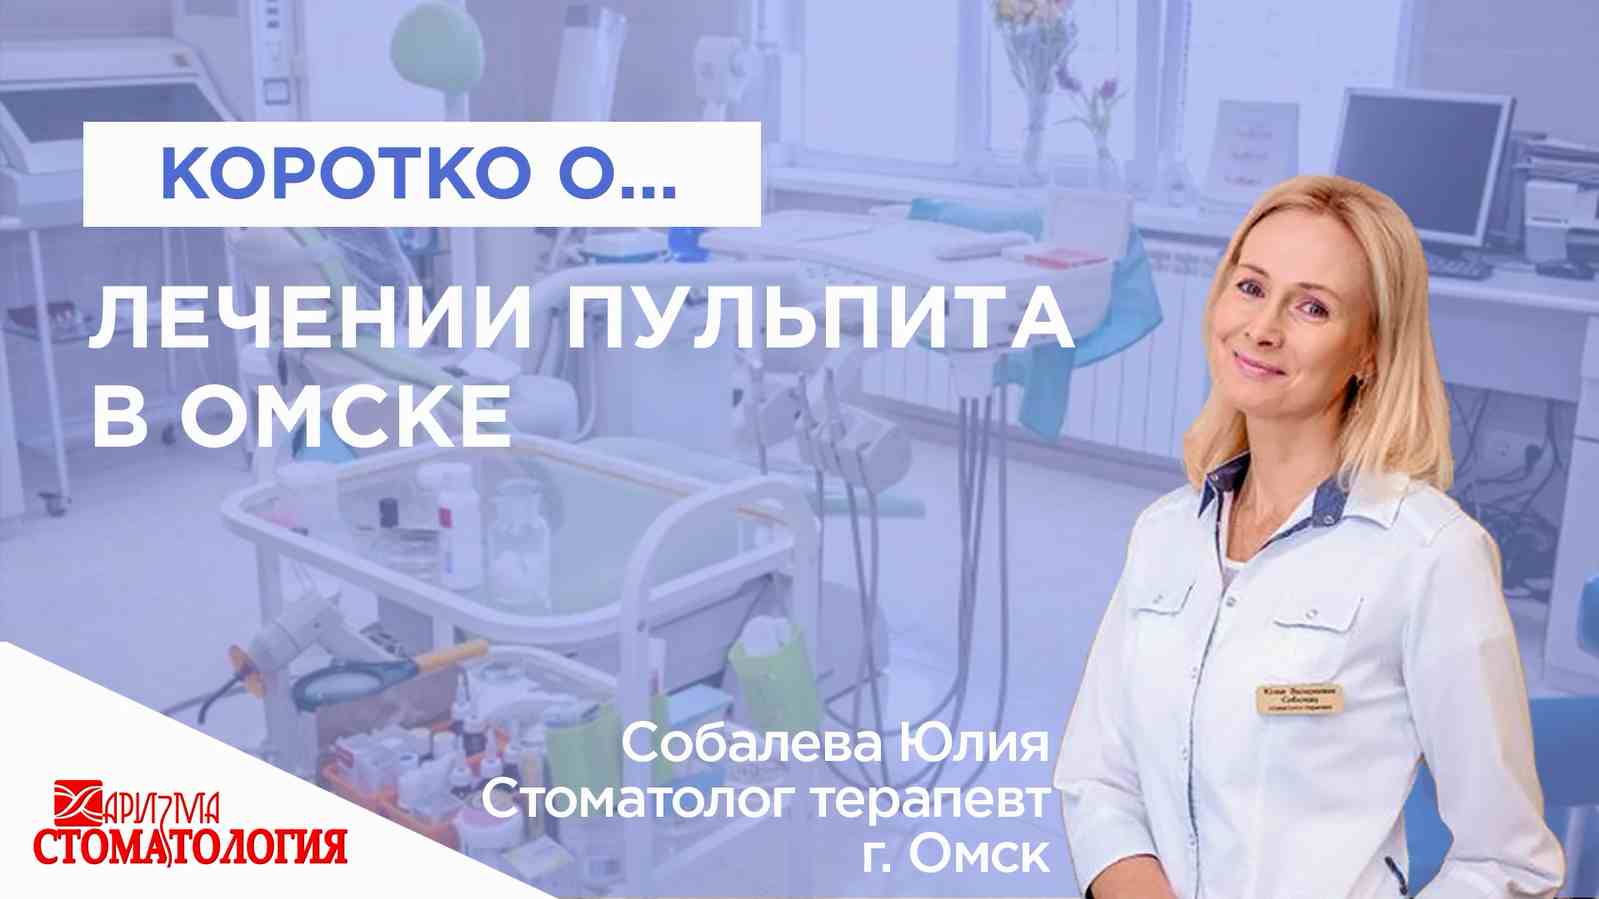 Лечение пульпита в Омске по доступной цене в клинике Харизма недорого